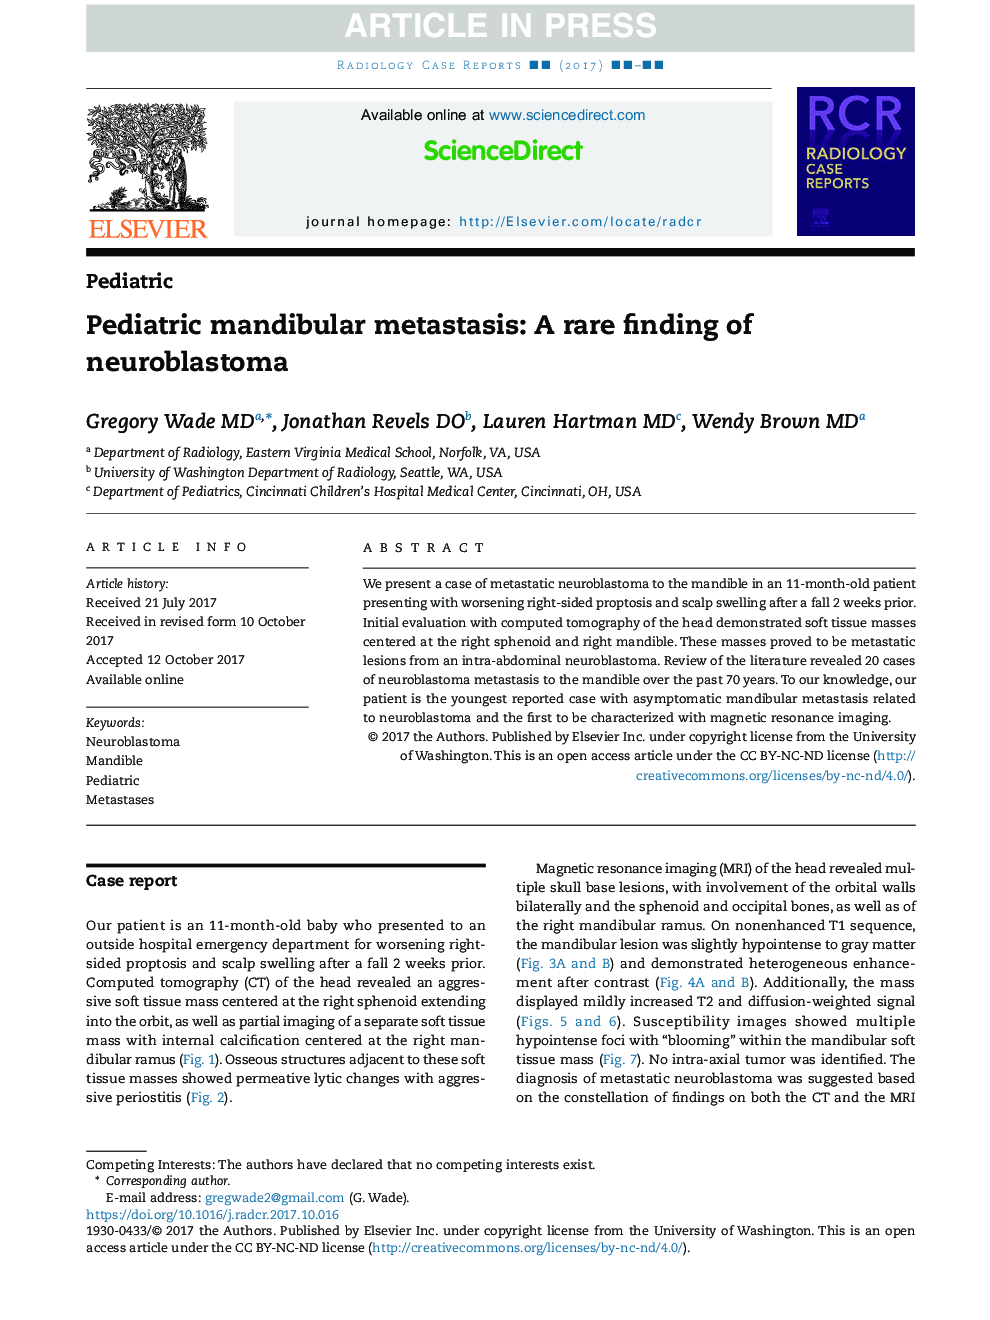 متاستاز ماندیبولار اطفال: یک یافته نادر از نوروبلاستوما 